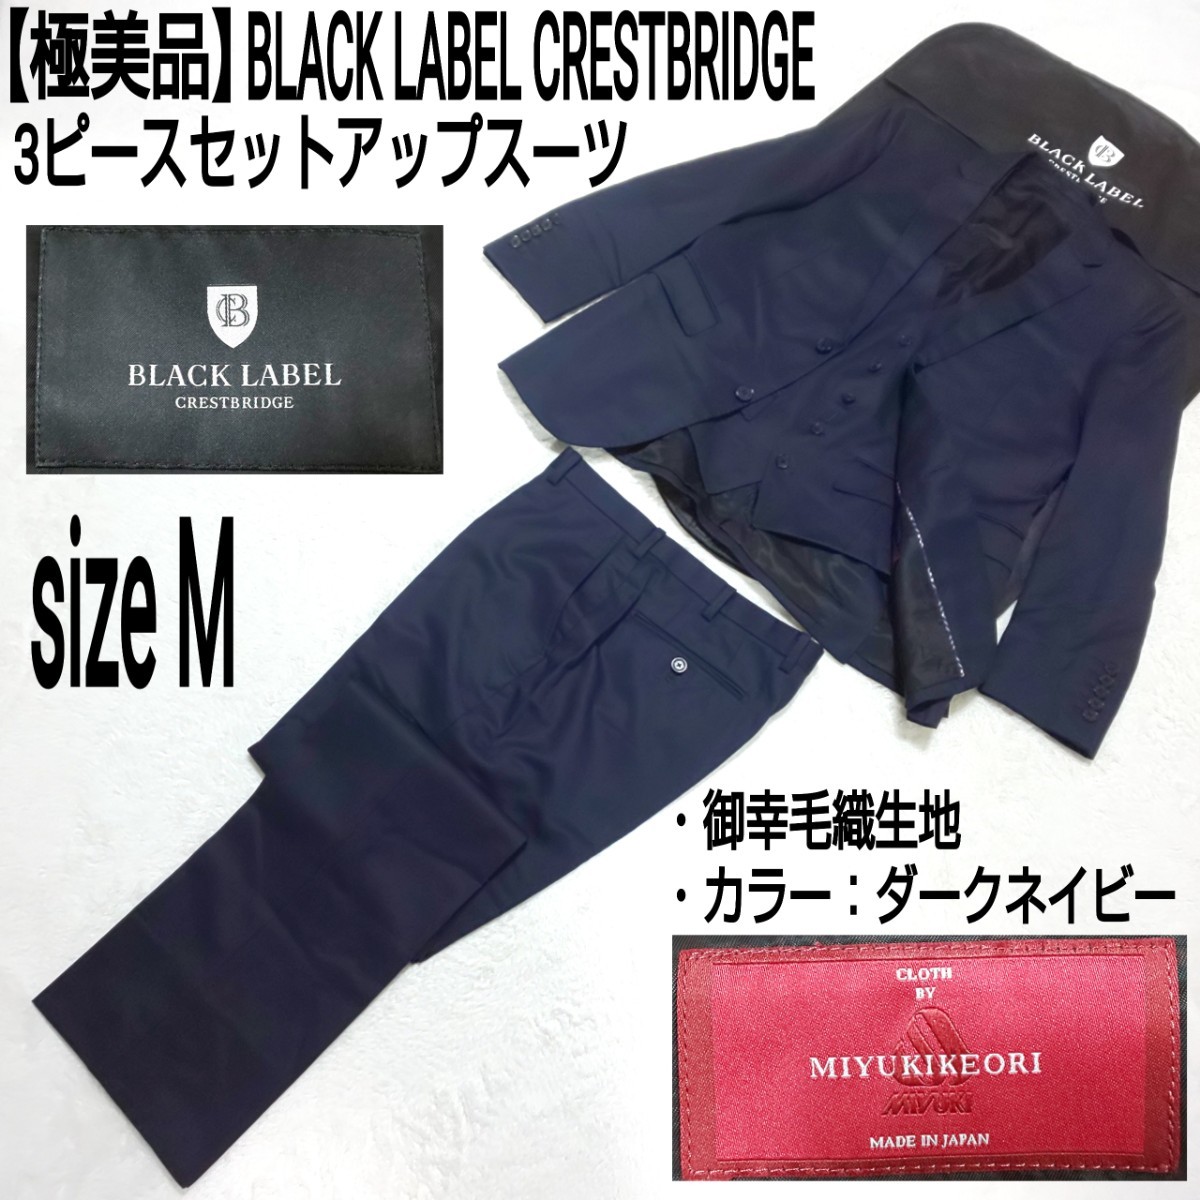 極美品】BLACK LABEL CRESTBRIDGE 3ピースセットアップスーツ